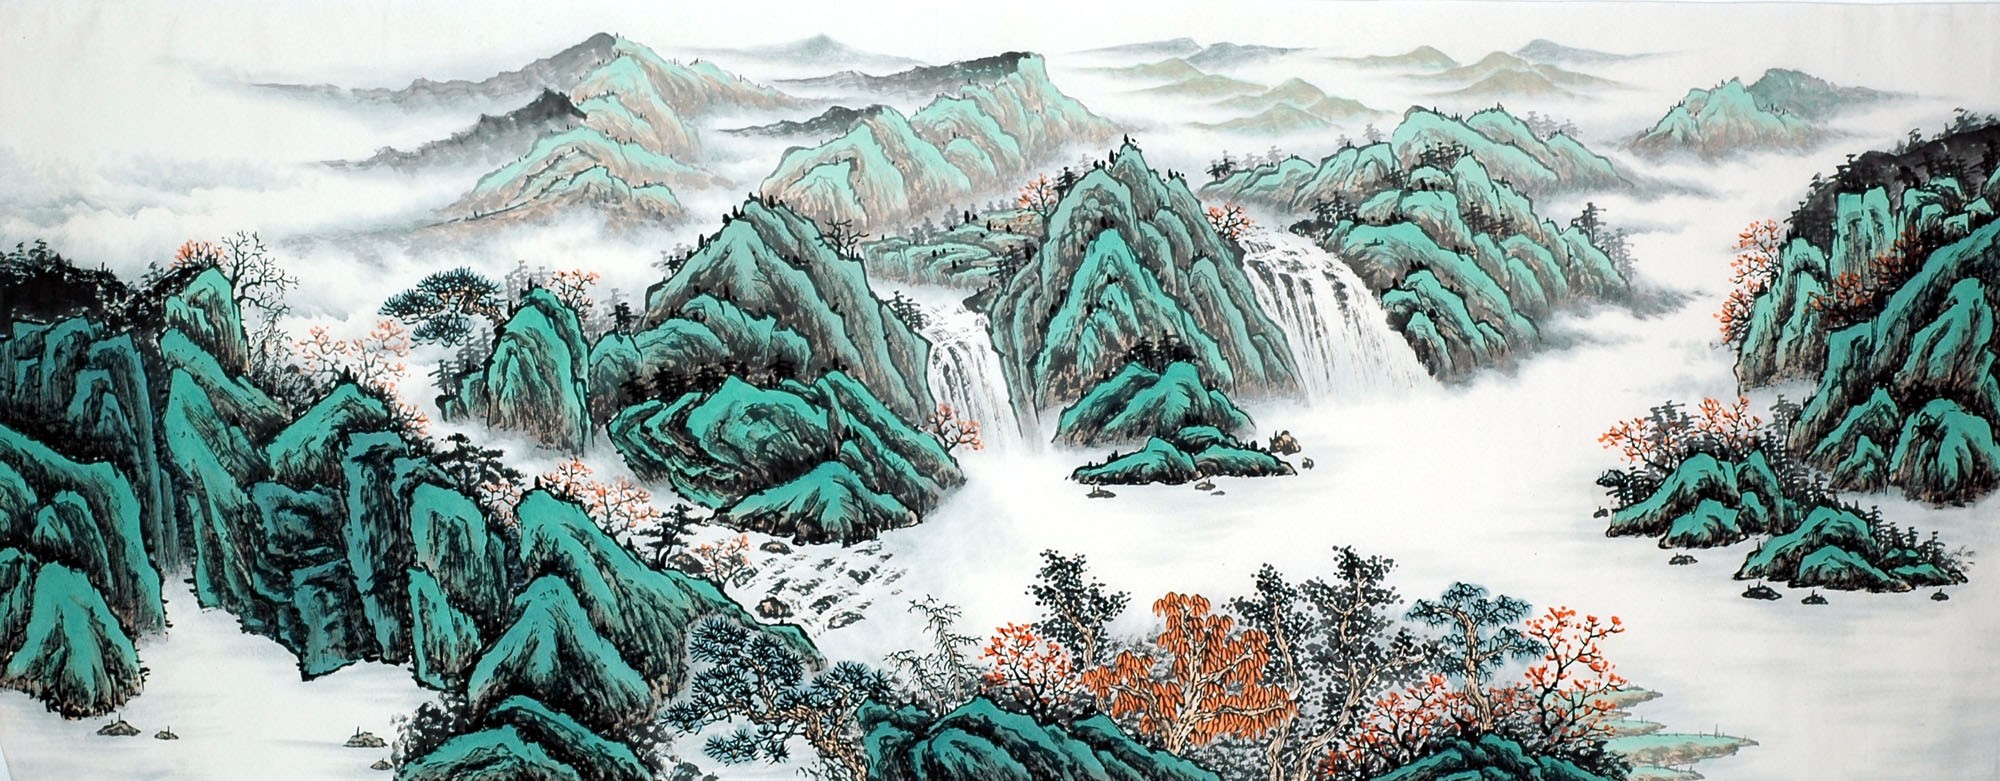 Chinese Landscape Painting - CNAG011664